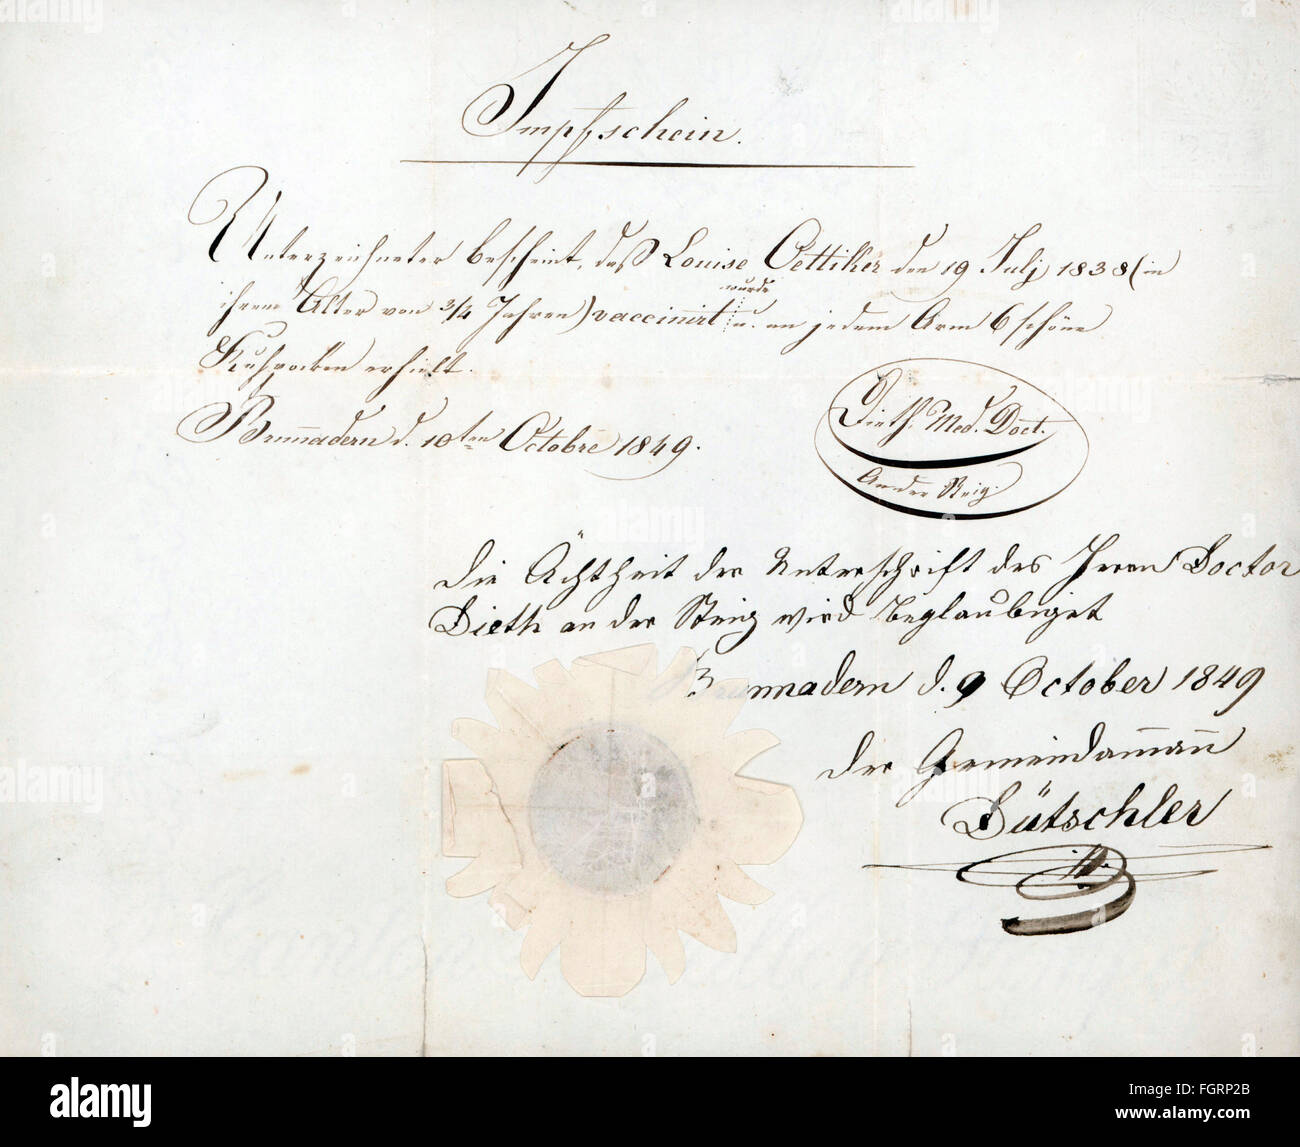 Medizin, Impfungen, Impfpass für Louise Oetiker, ausgestellt in Brunnadern, 10.10.1849, Additional-Rights-Clearences-not available Stockfoto